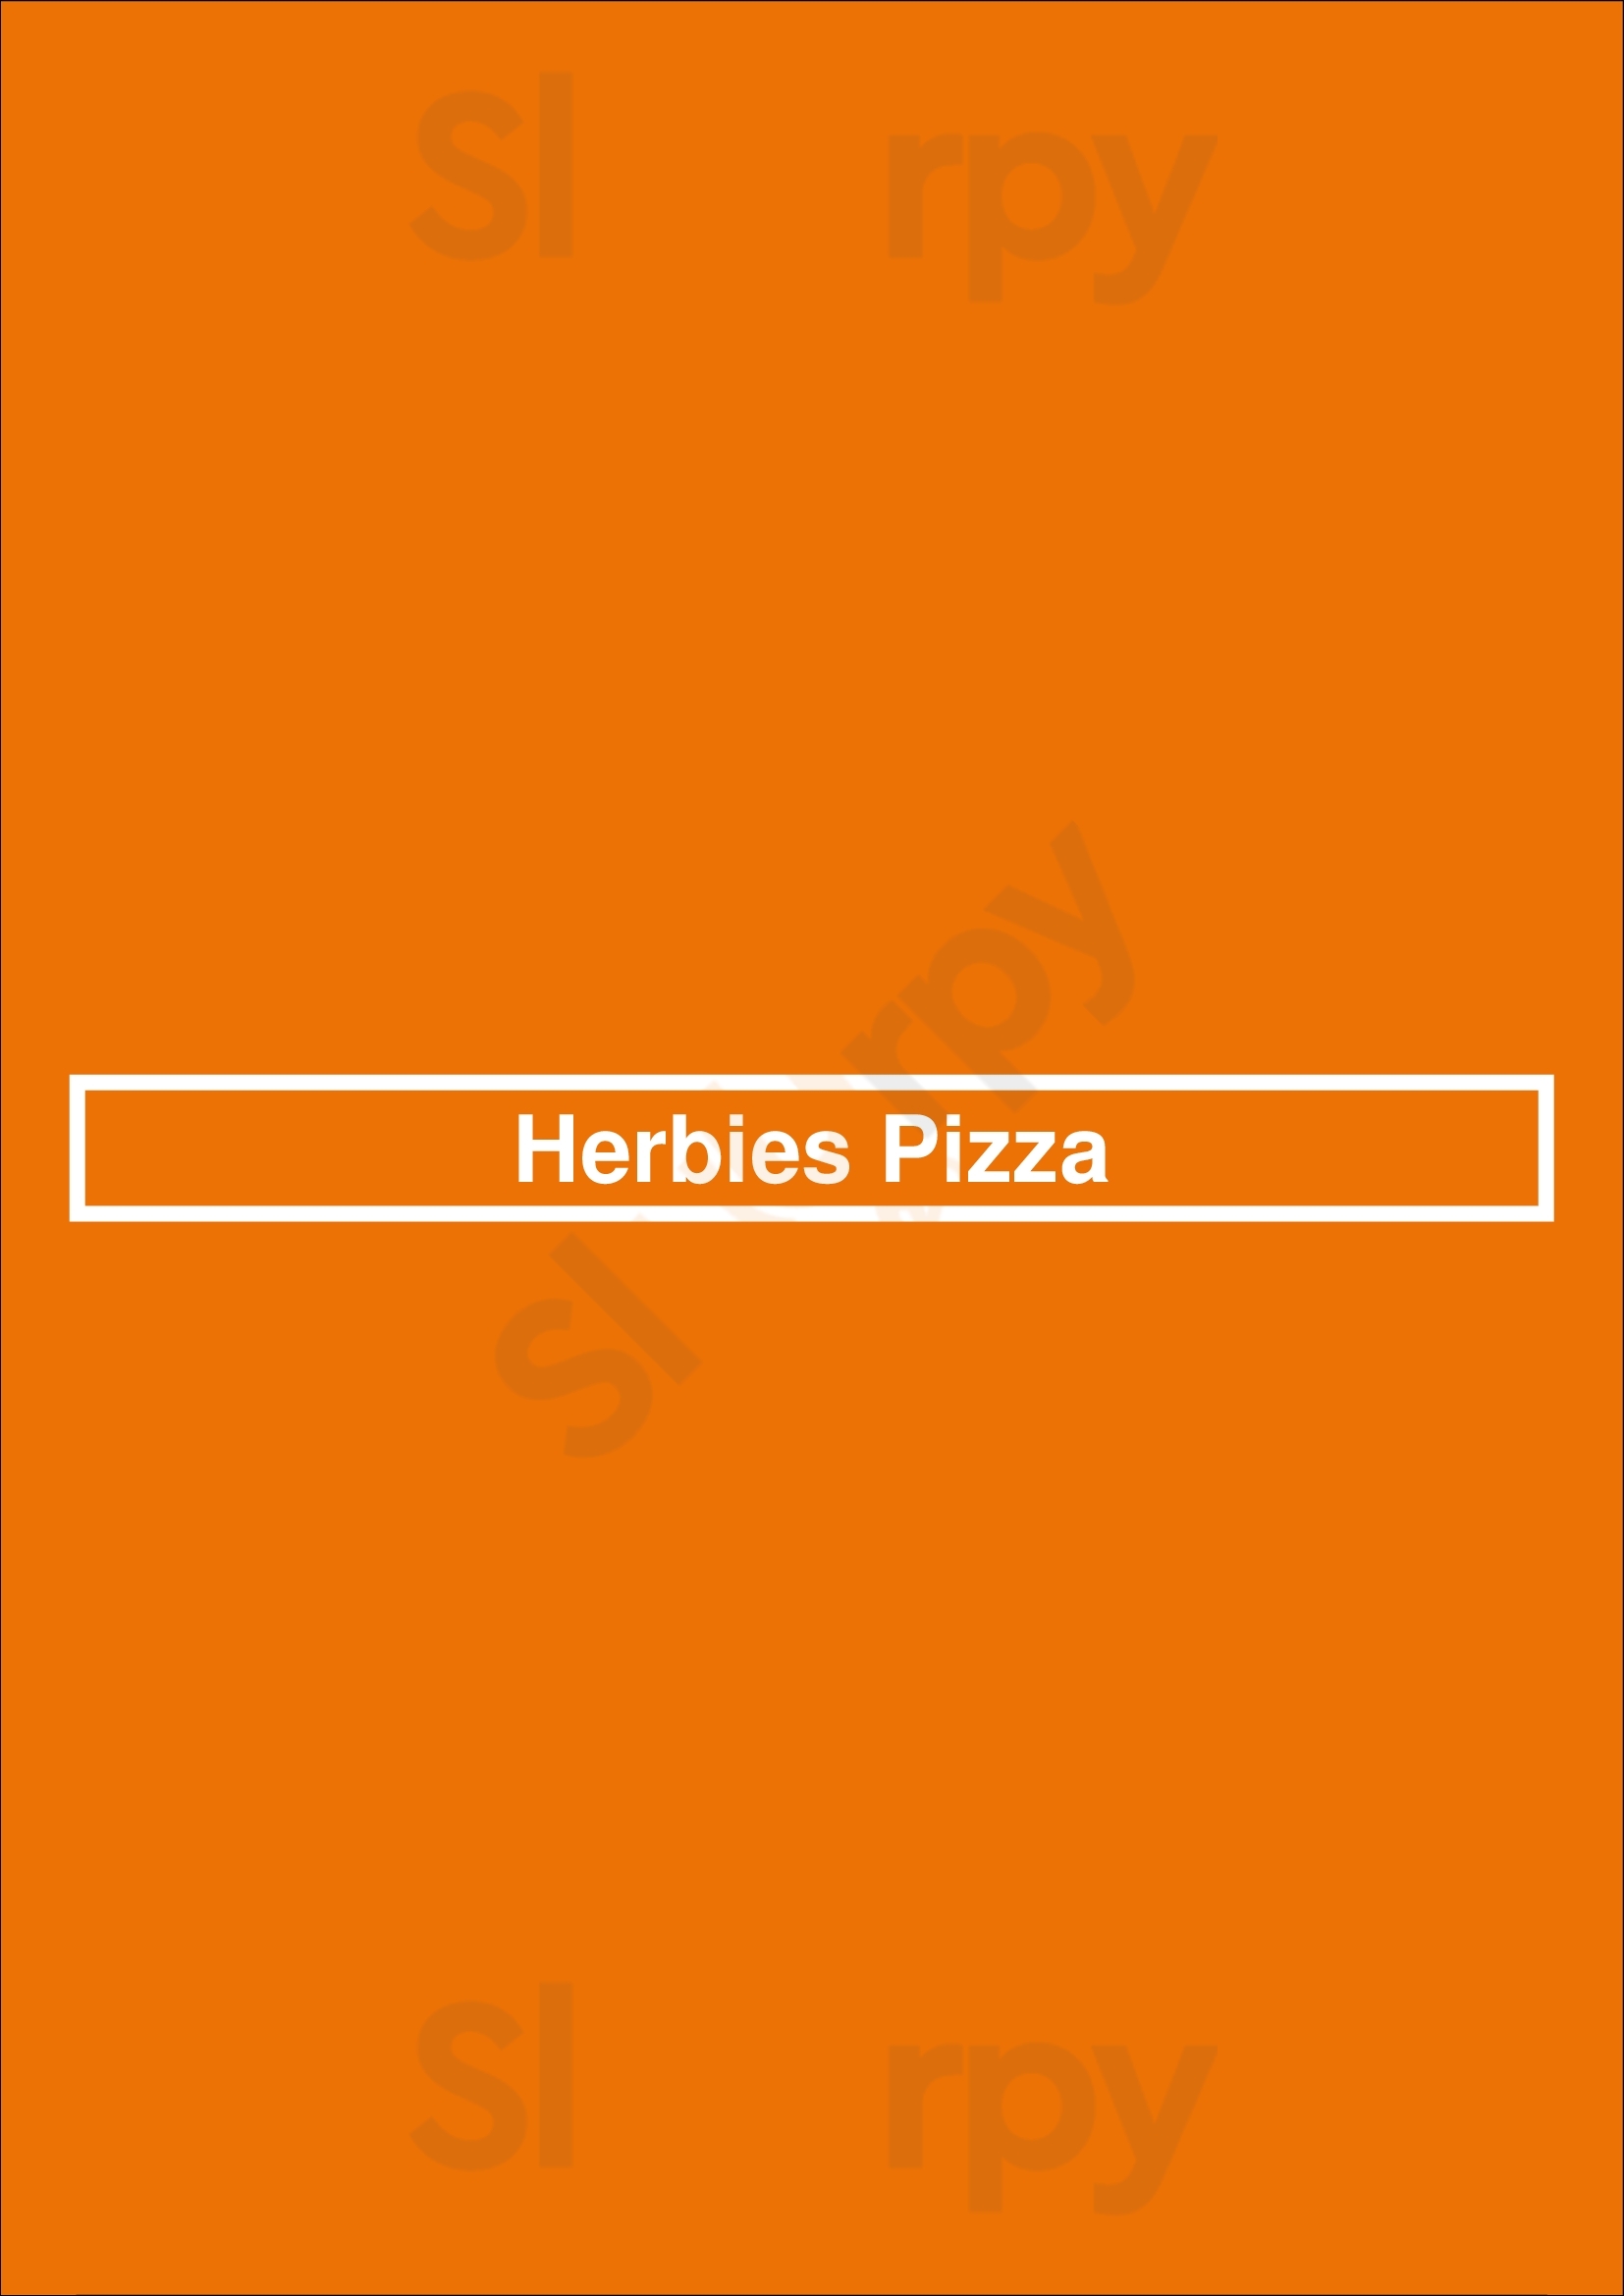 Herbies Pizza Southampton Menu - 1